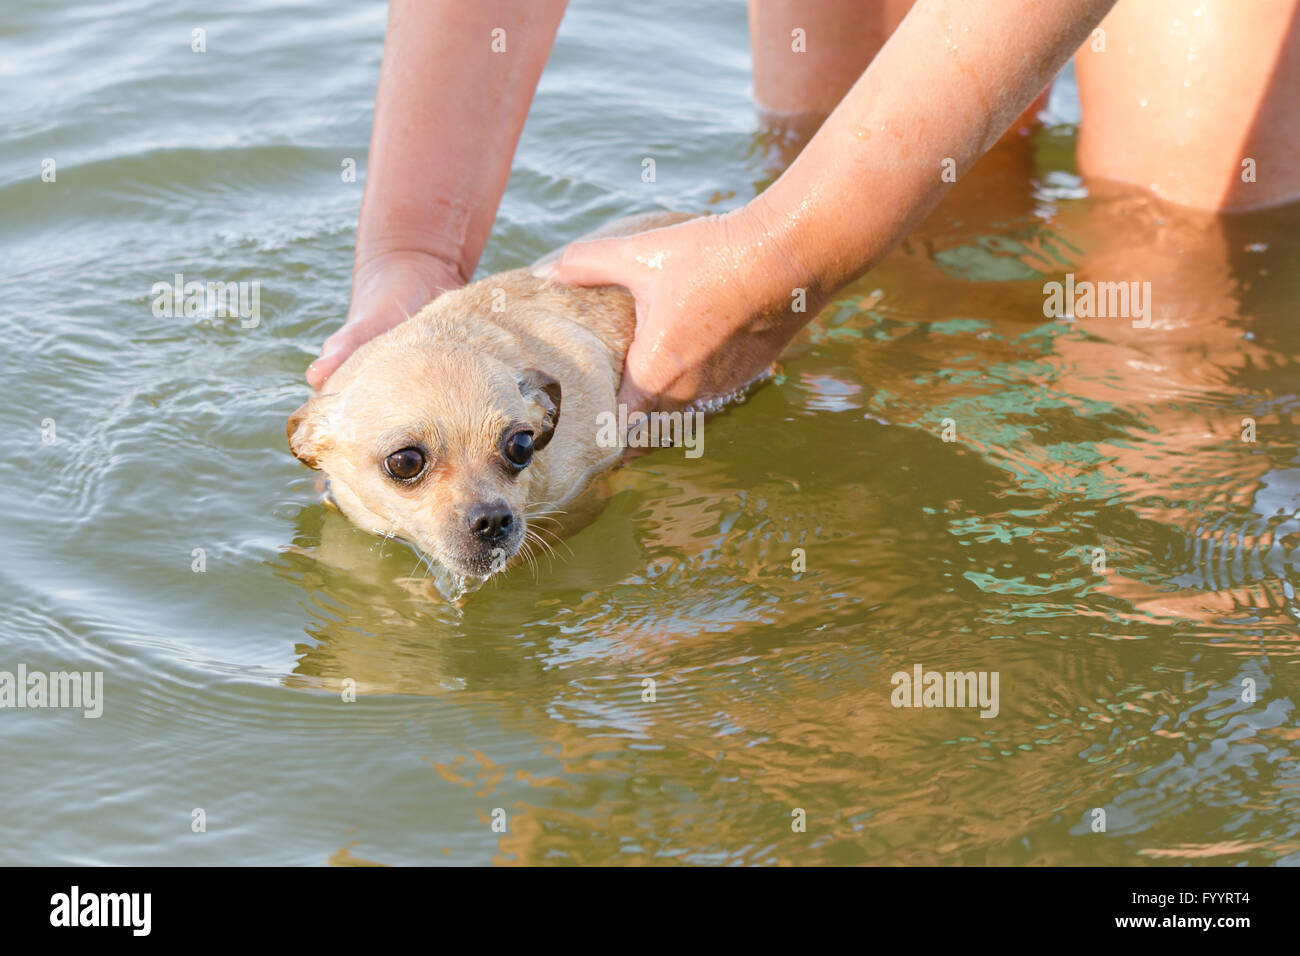 La rivière pour nager peur chien Chihuahua Banque D'Images